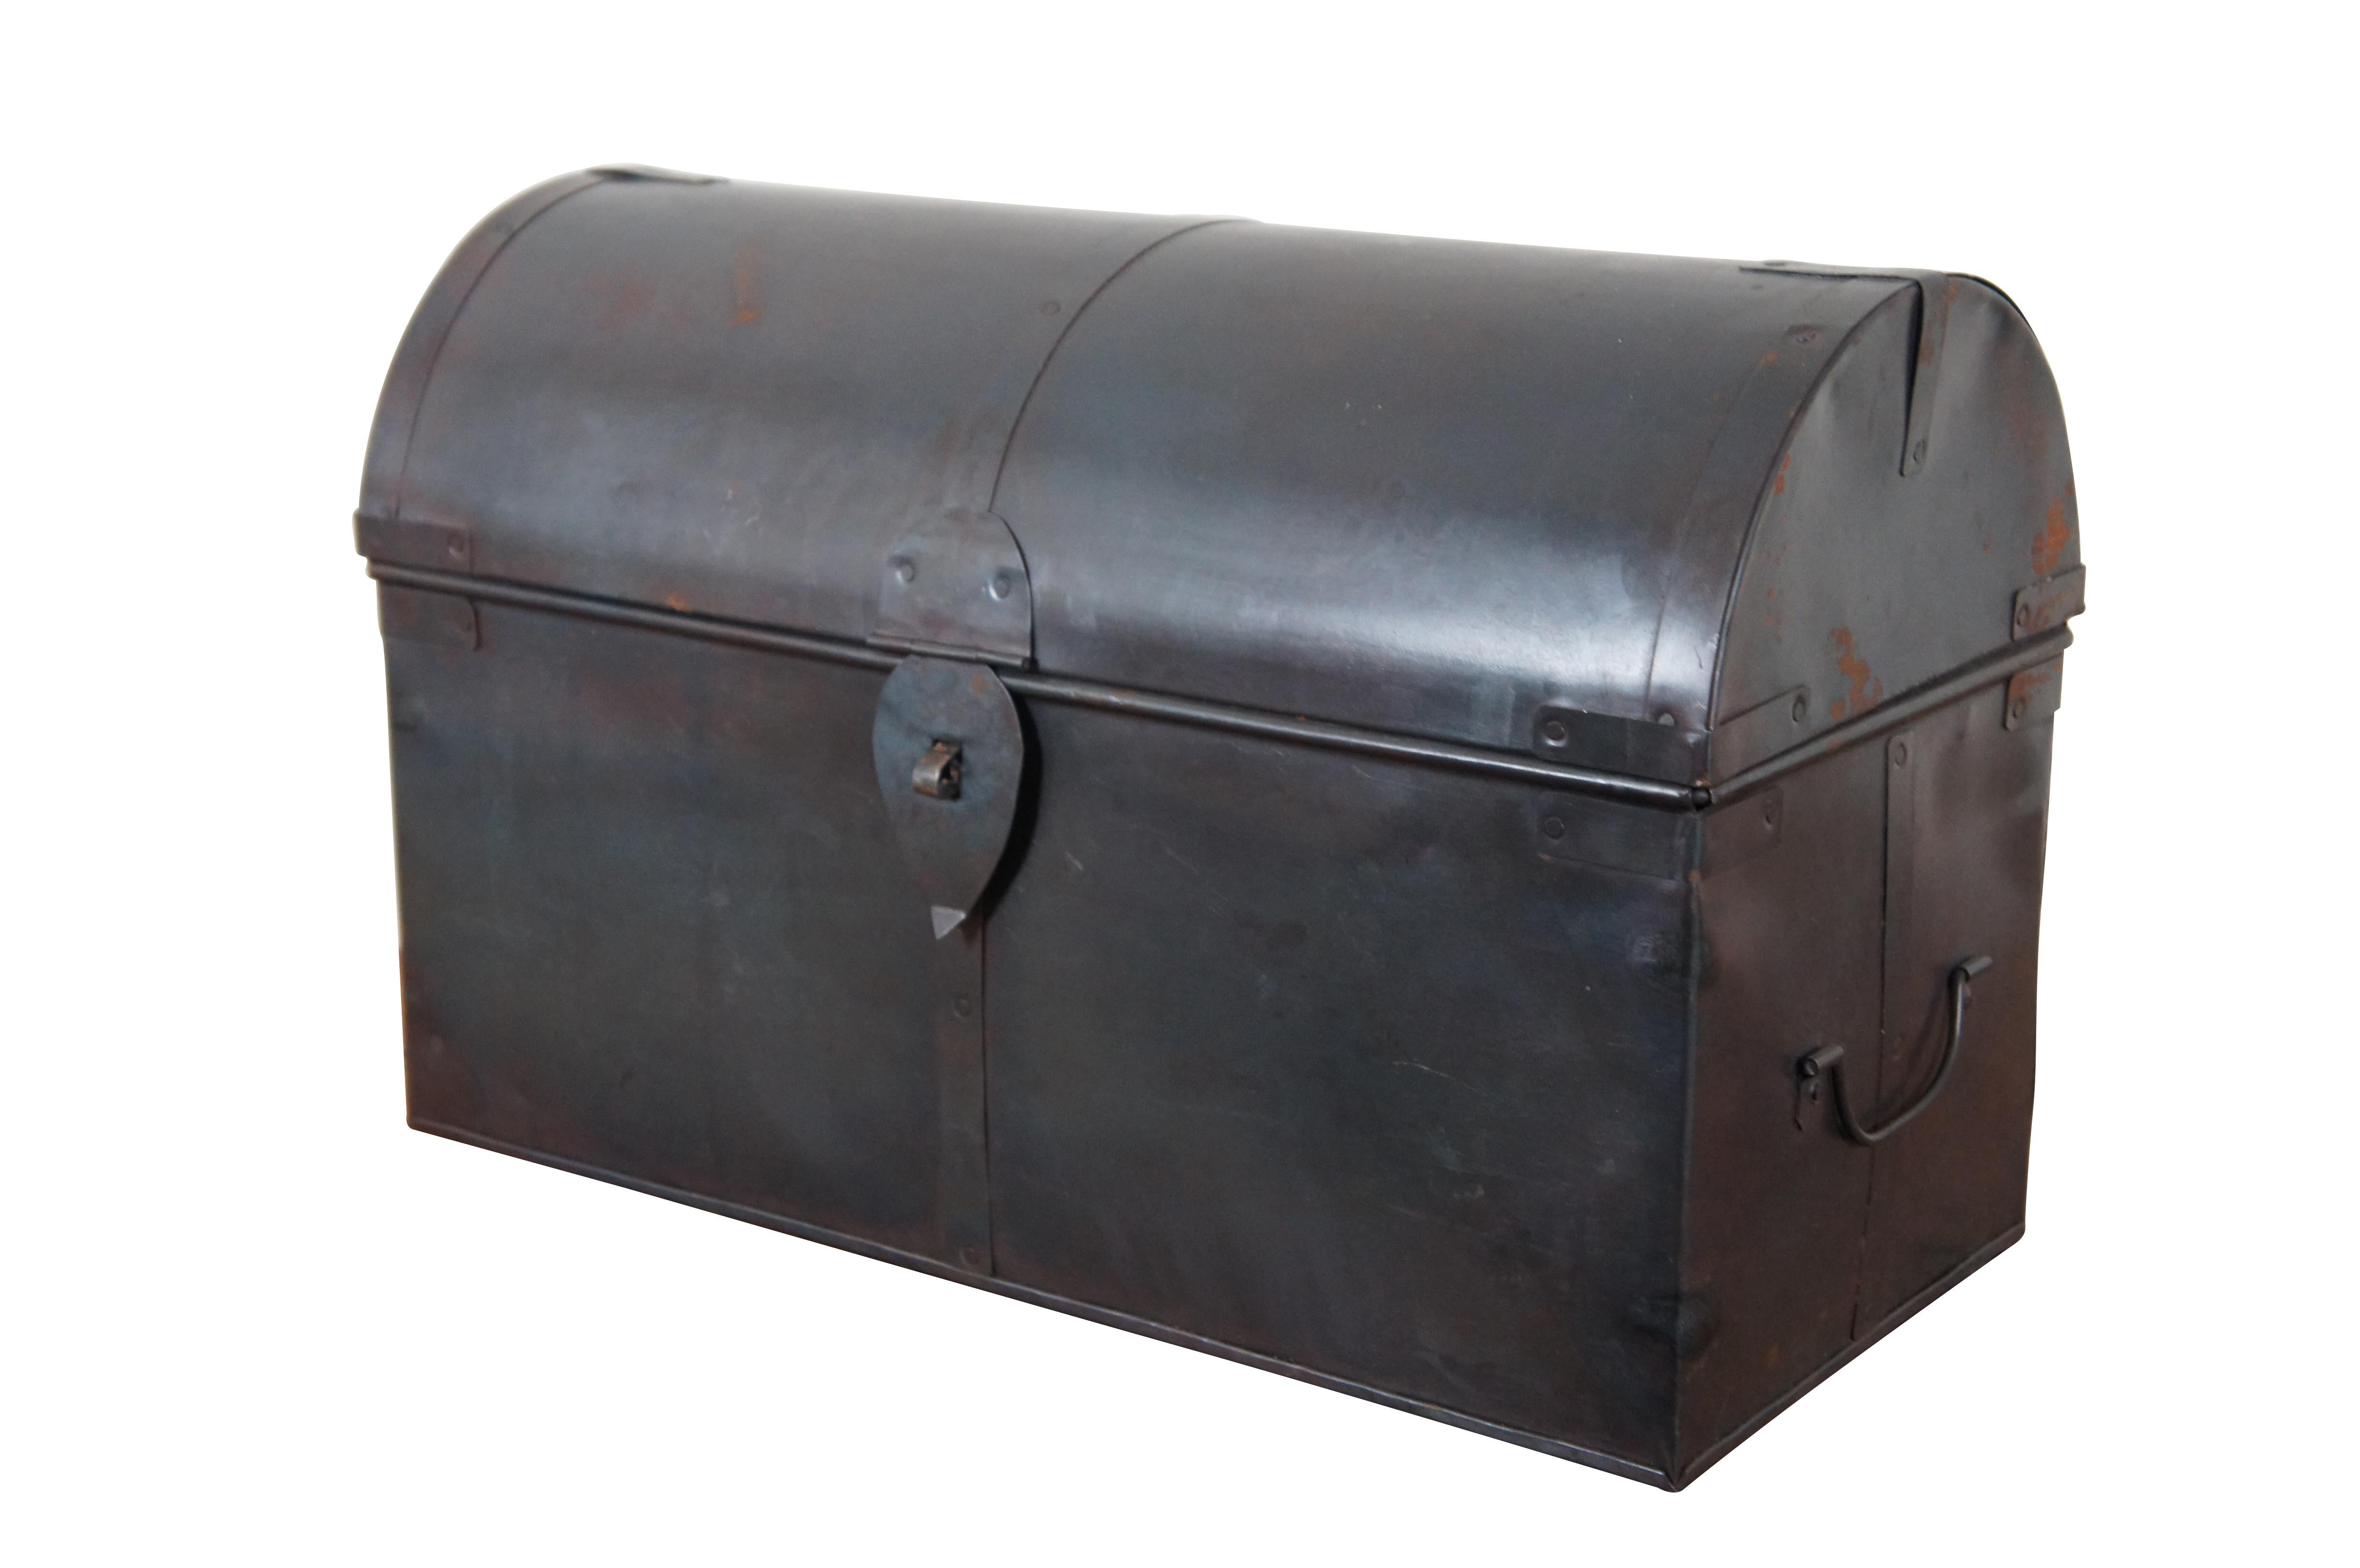 Schwarze Vintage Metallkiste / Truhe / Koffer in Form eines Briefkastens mit gewölbtem Oberteil mit Verschluss auf der Vorderseite für ein Schloss / Vorhängeschloss, Griffe an jedem Ende und ein zweistufiger, nicht herausnehmbarer Einsatz mit sechs